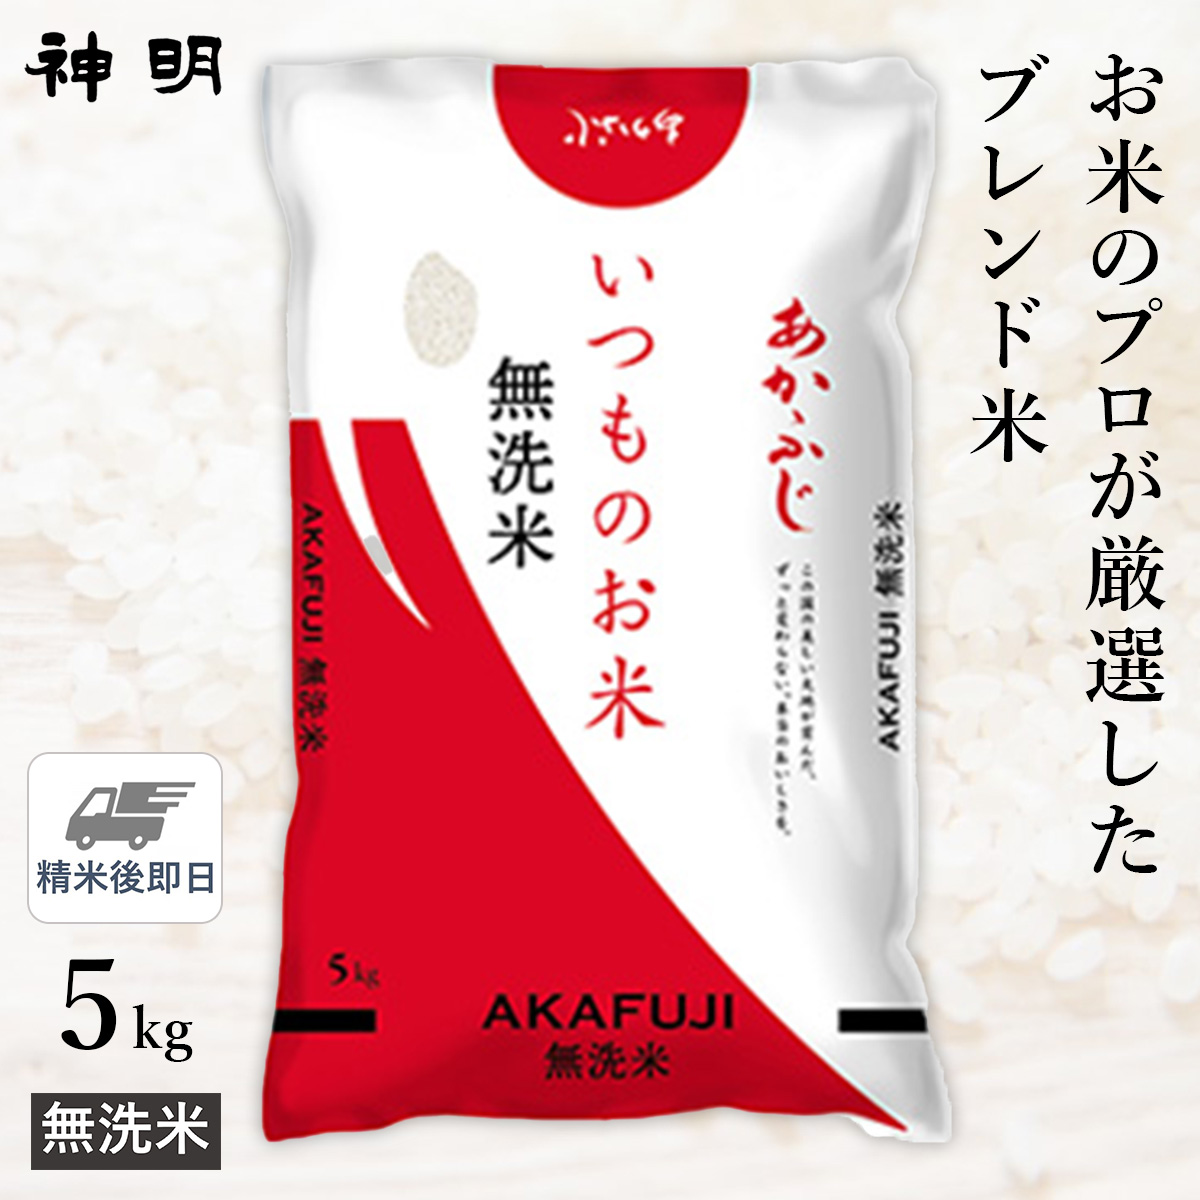 ○【精米仕立て】無洗米 いつものお米あかふじ 5kg(1袋)